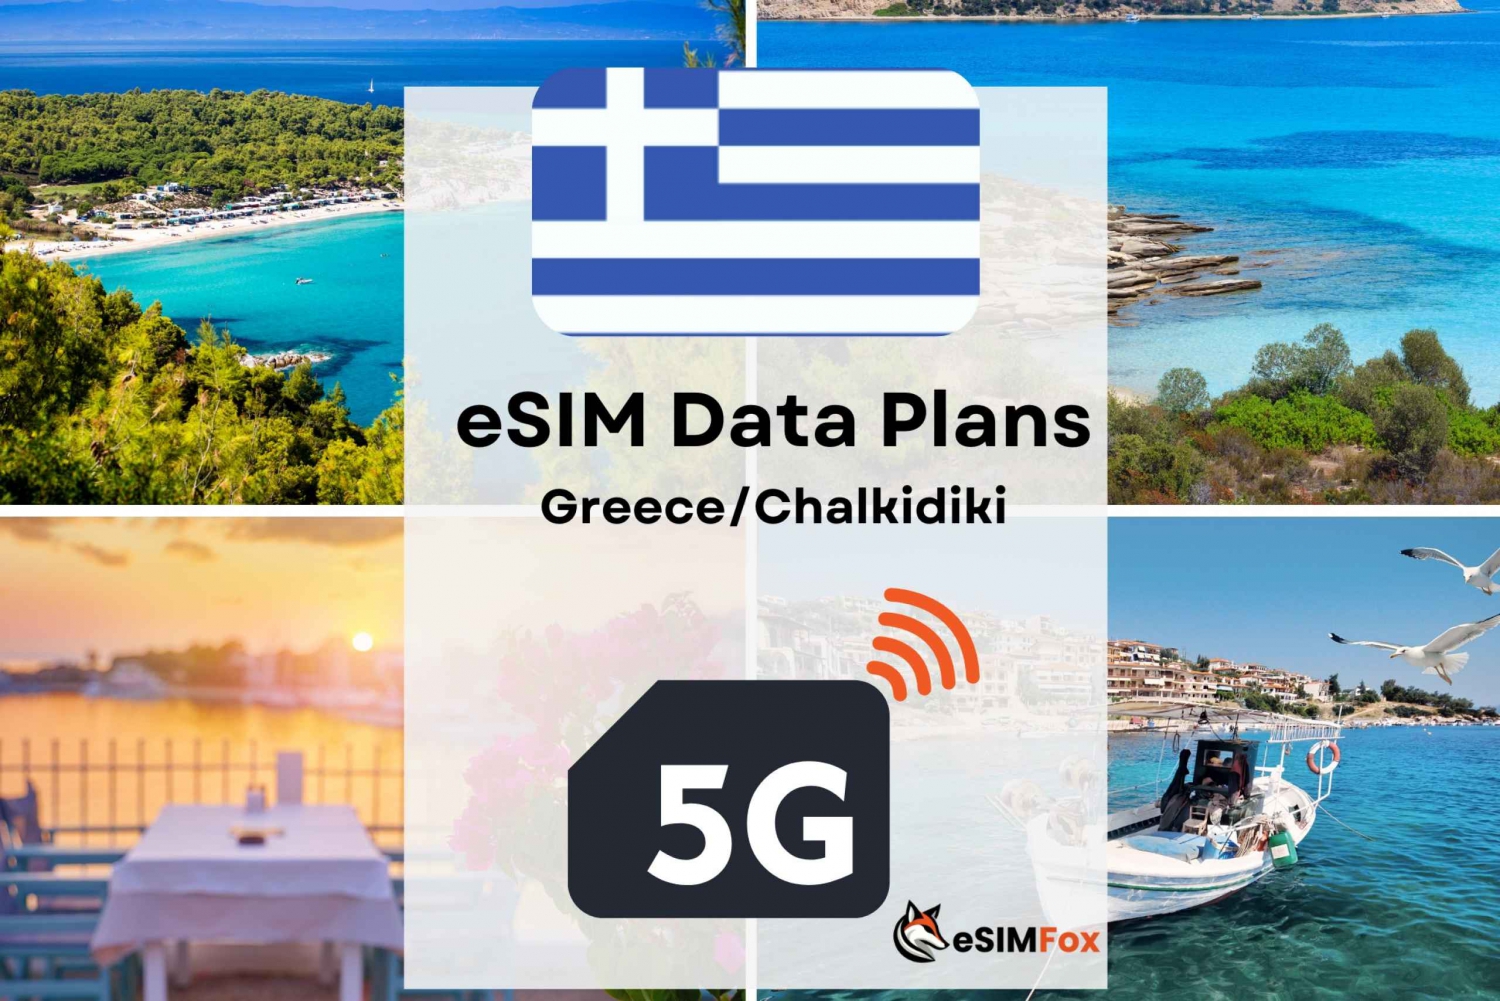 Chalkidiki: Grækenland/Europa eSIM Internet Data Plan høj hastighed